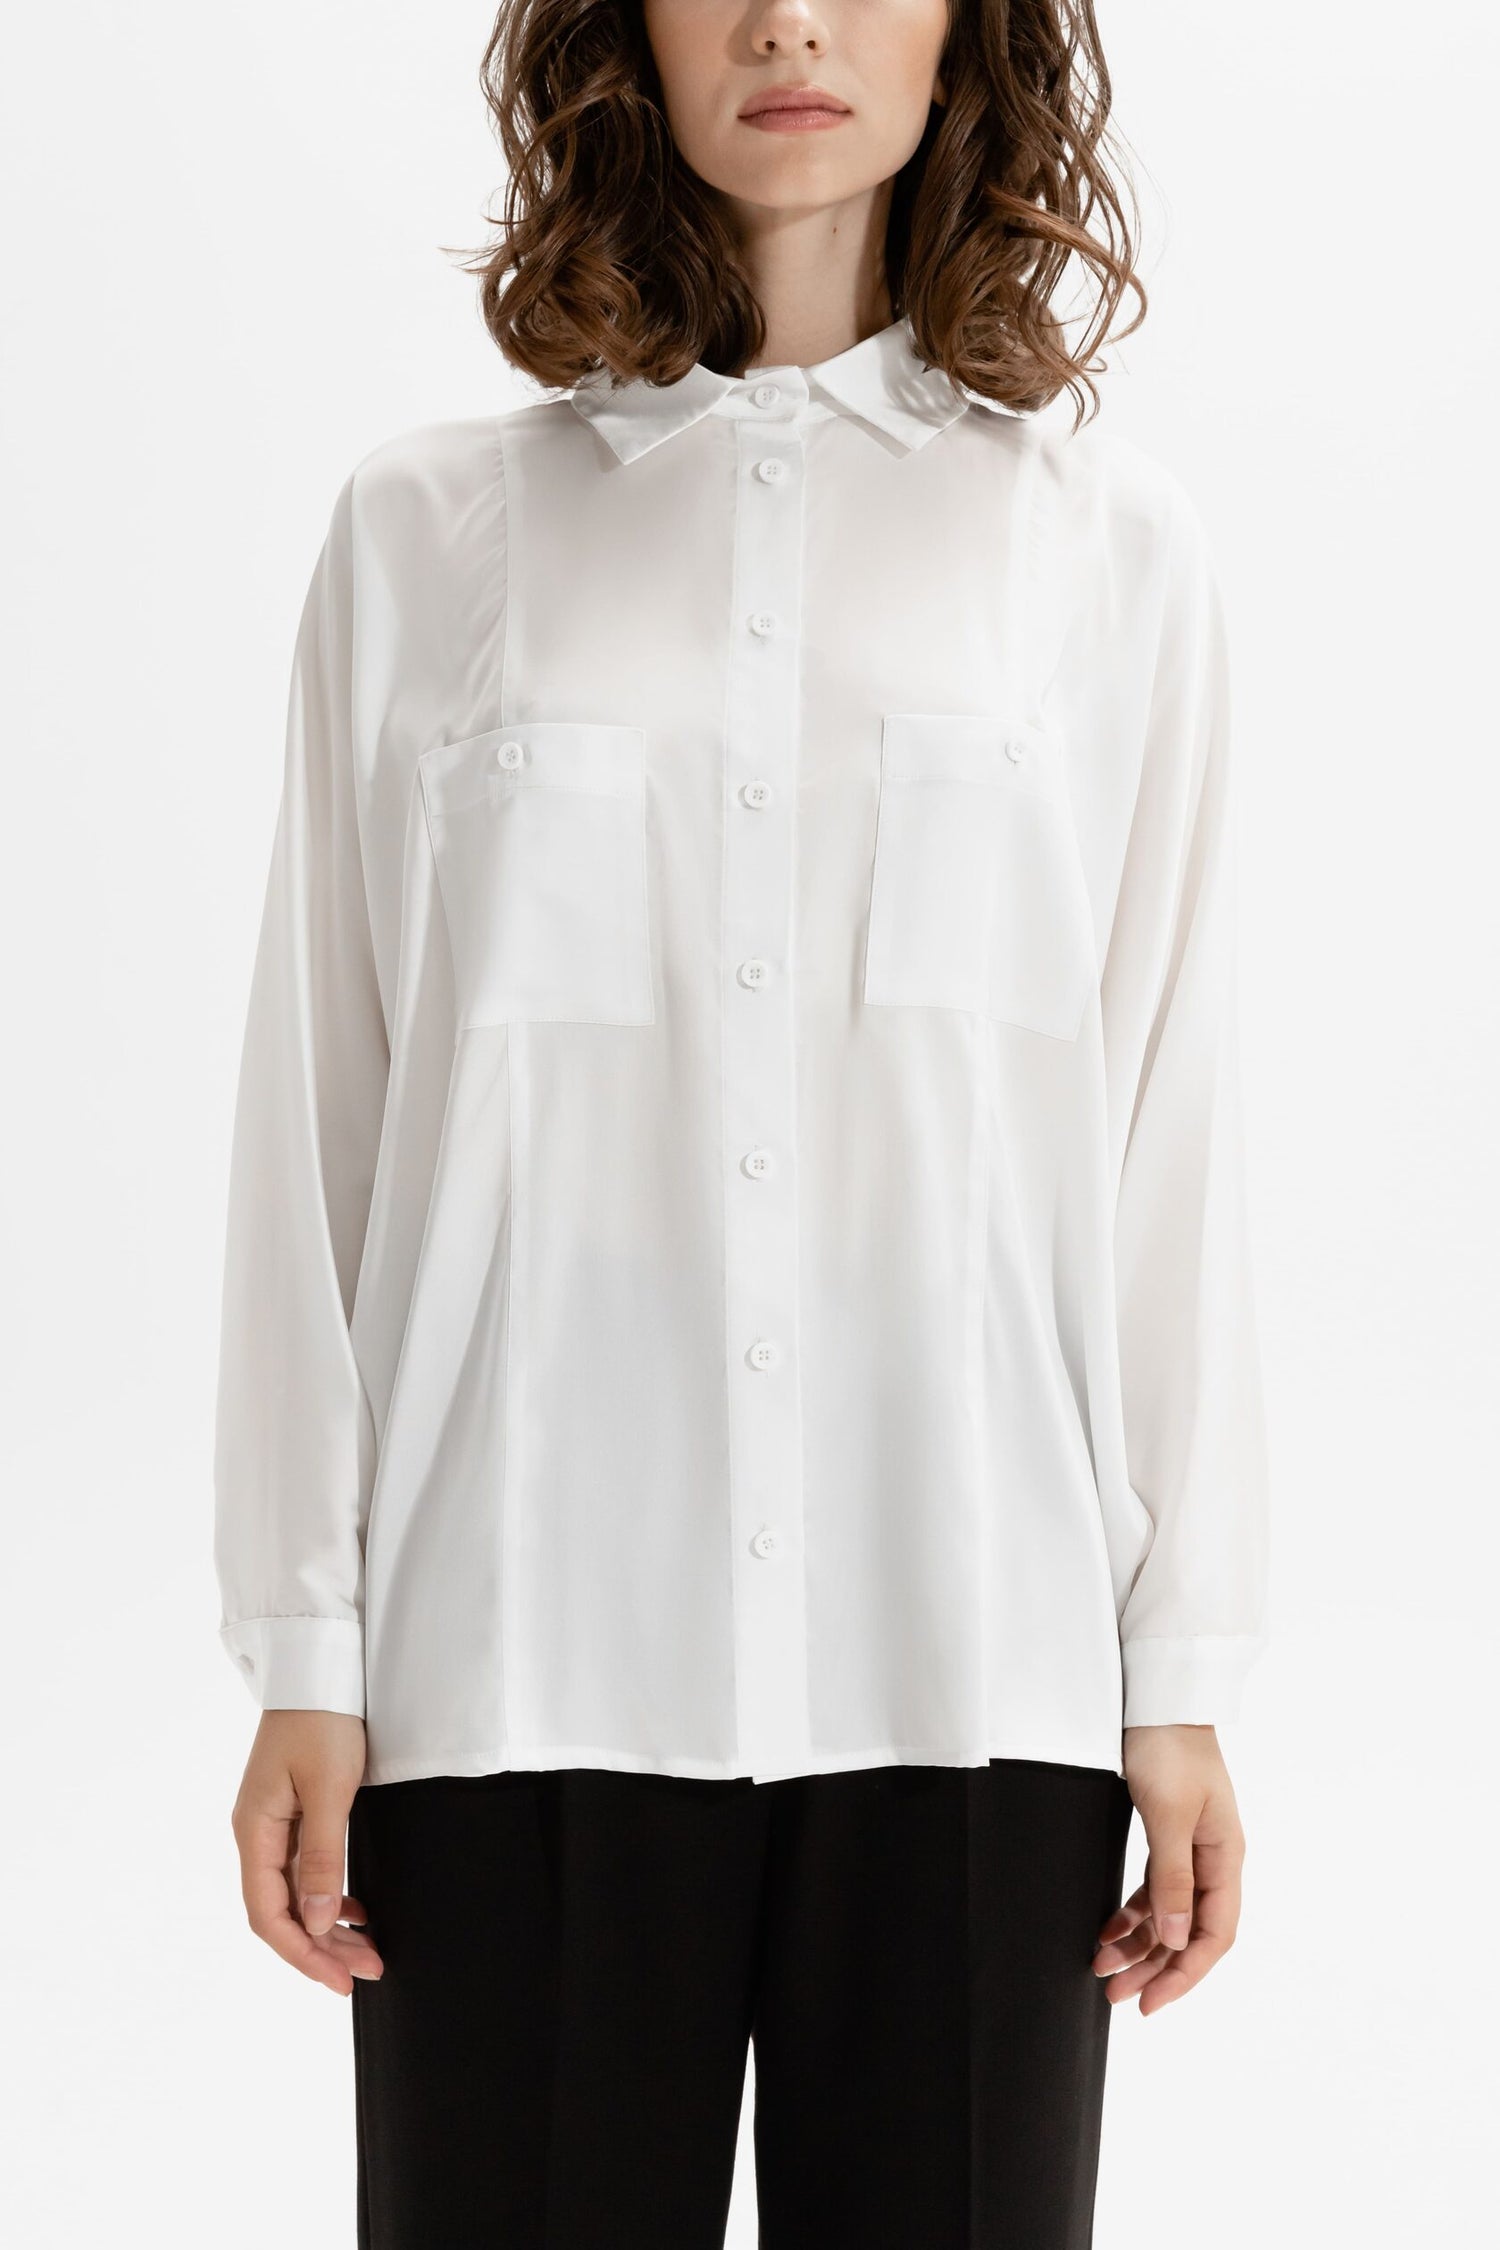 White silk blouse 2297 (mint)